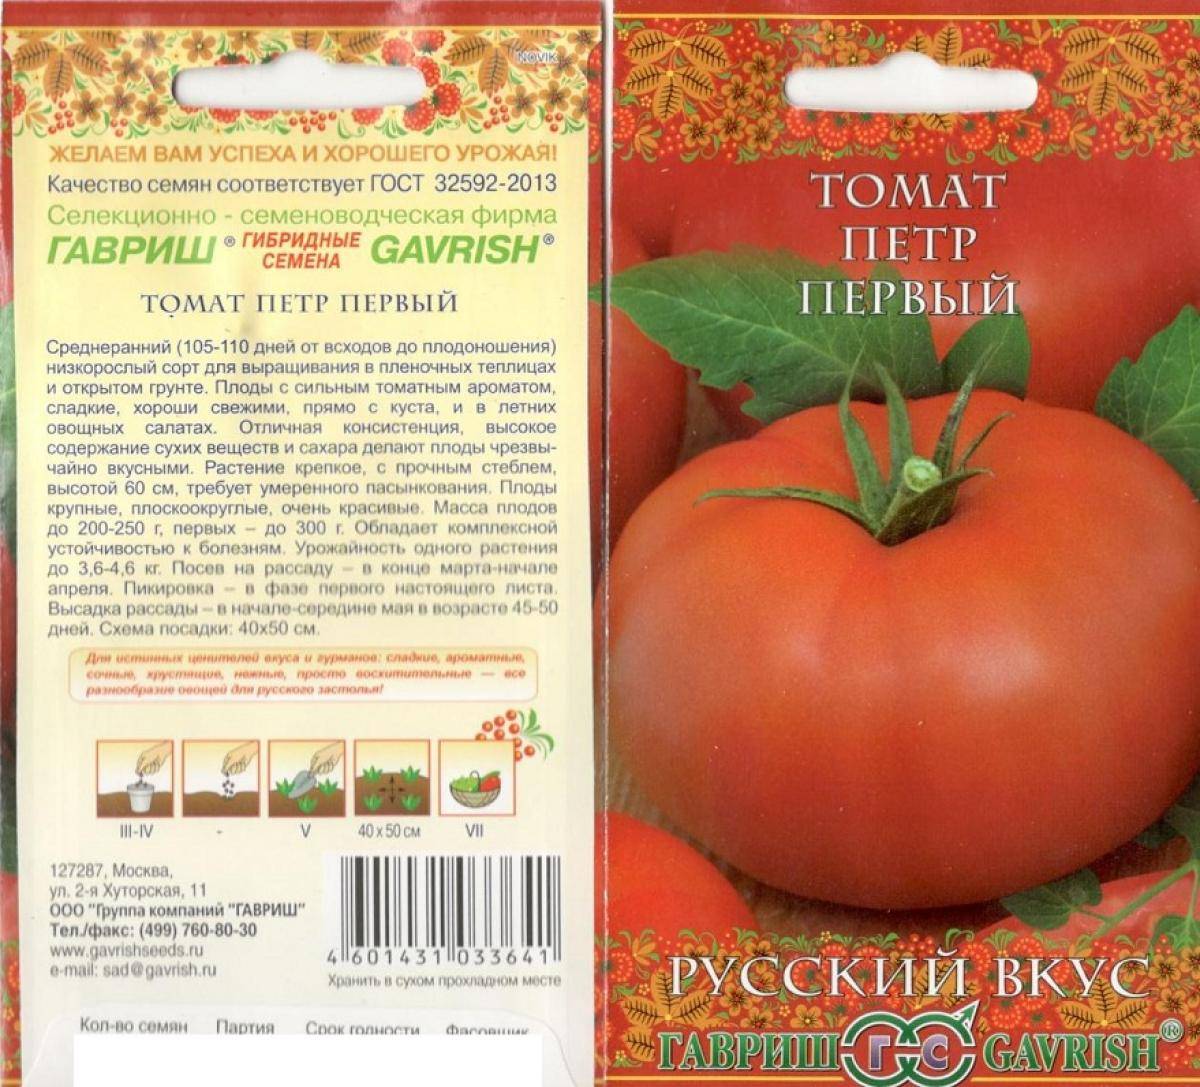 Фото, видео, отзывы, описание, характеристика, урожайность о сорте томата «миллионер».